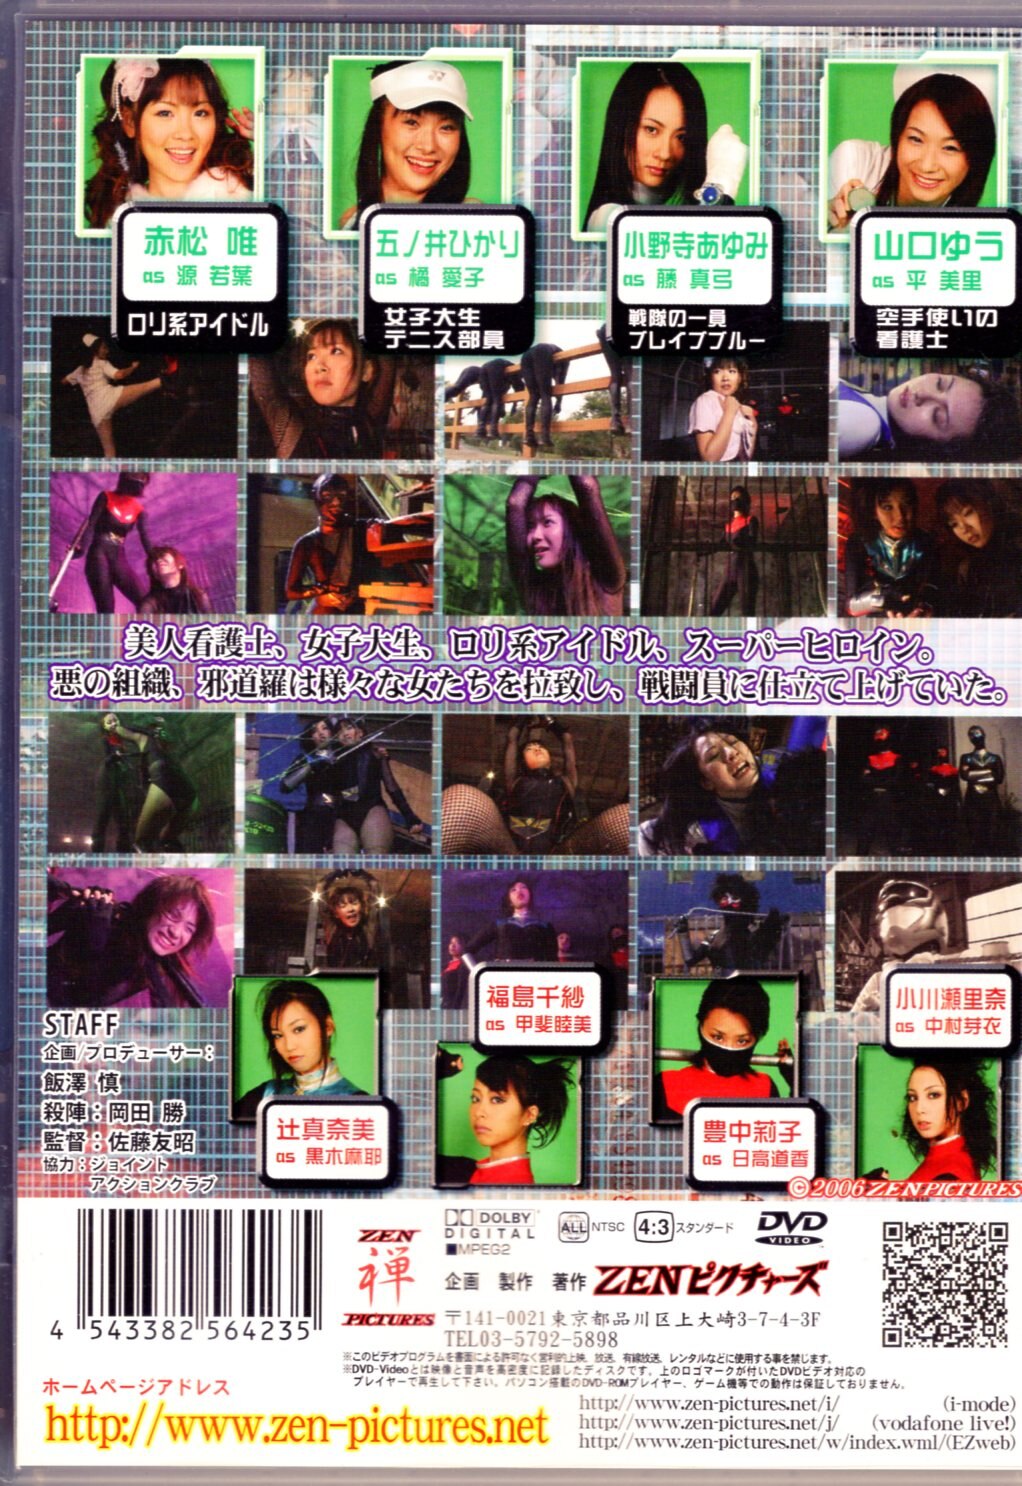 女戦闘員物語 壊される少女達 ZENピクチャーズ - DVD